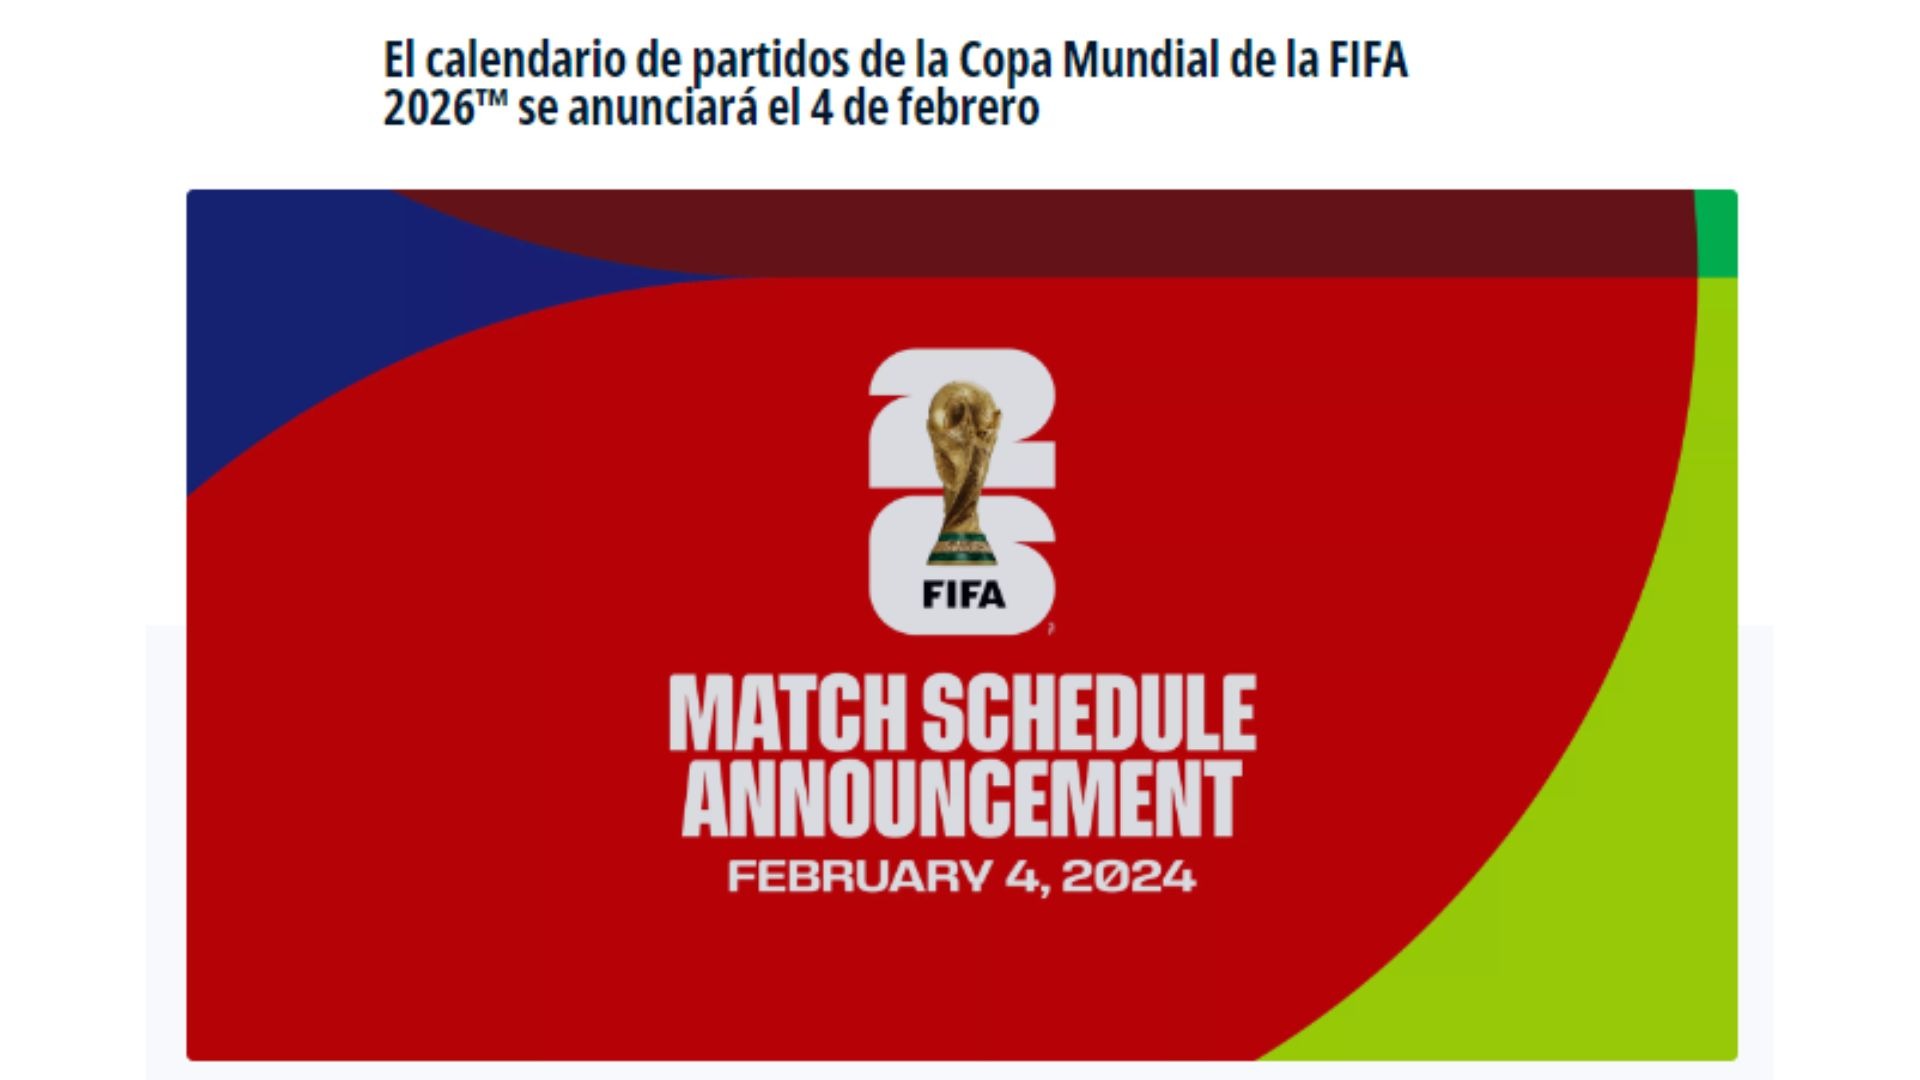 Anuncio de la FIFA para llevar a cabo el cronograma para el mundial 2026 / Foto: FIFA